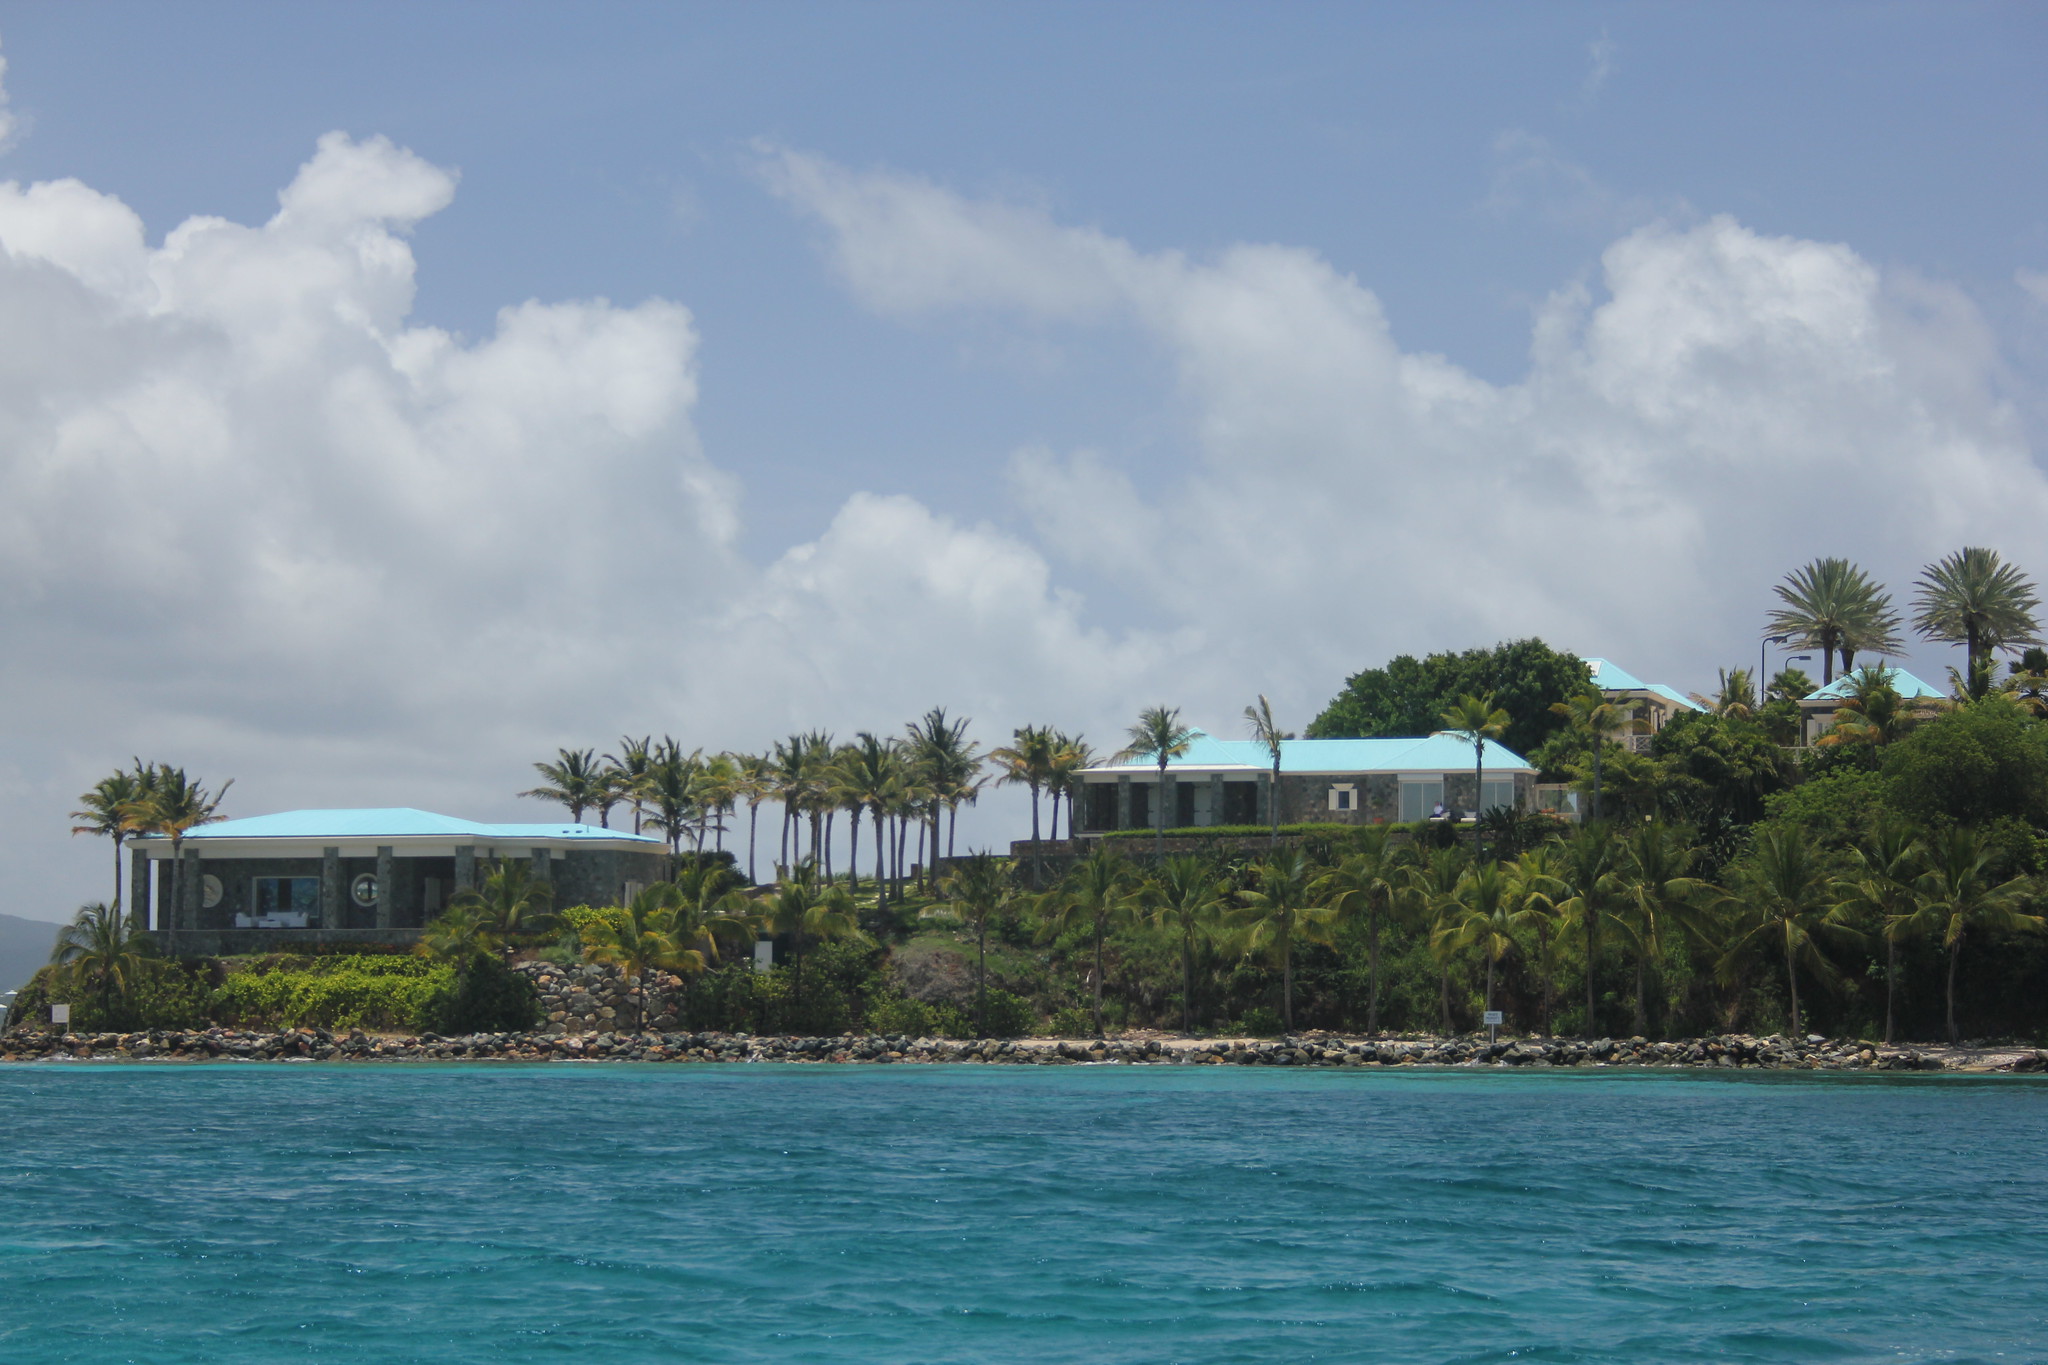 两座低矮的建筑，坐落在碧海之上的棕榈树岛上，杰弗瑞·爱泼斯坦(Jeffery Epstein)曾在那里度假